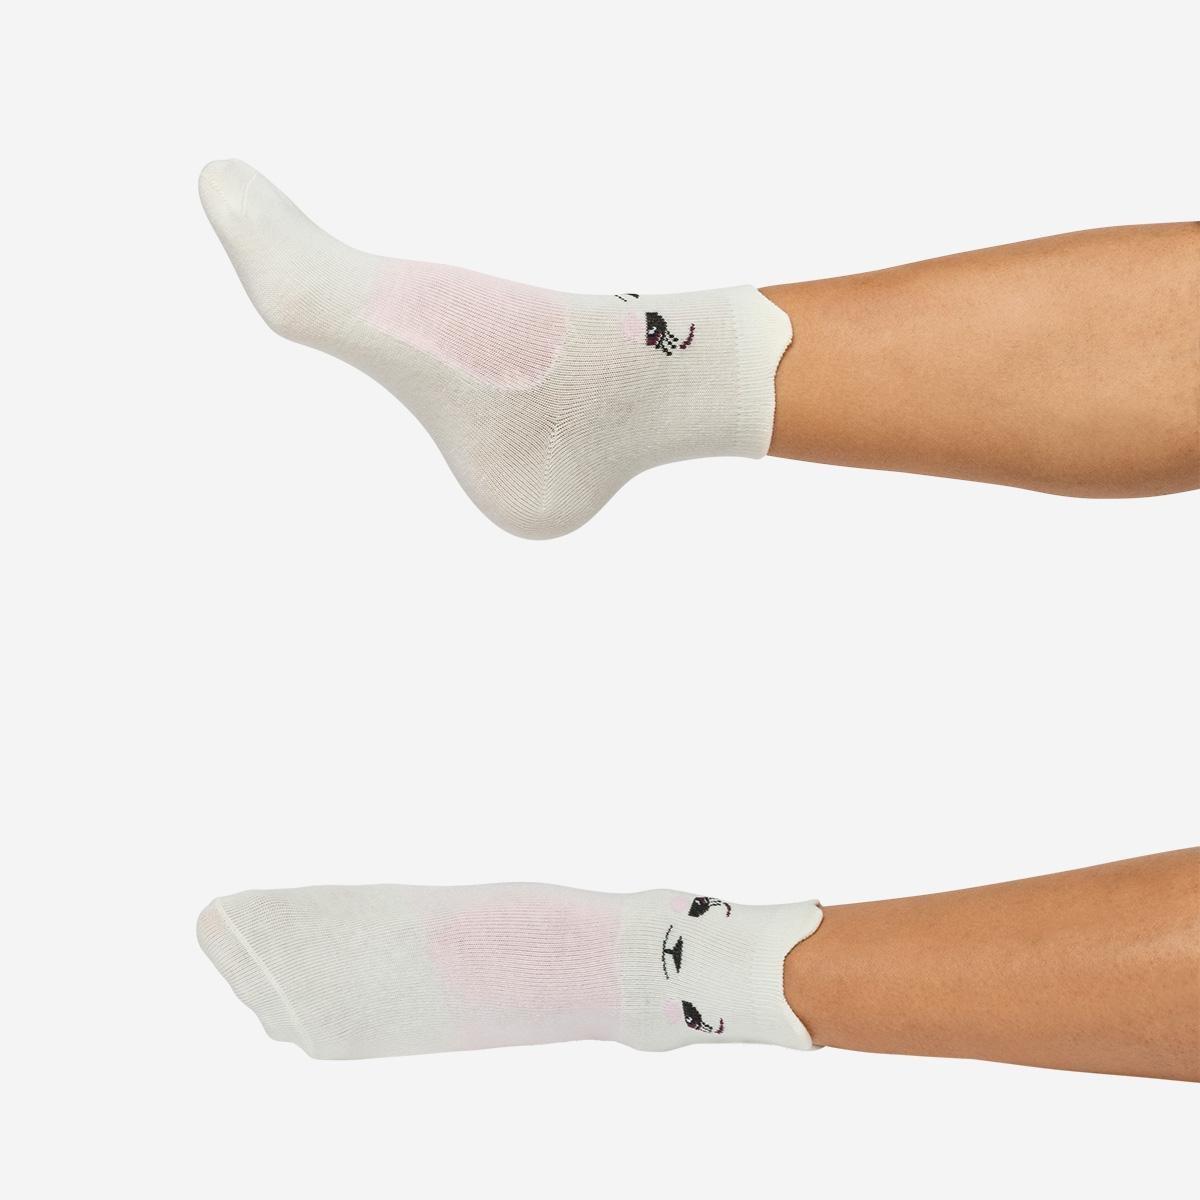 Multicolour strompler socks. size 39-41